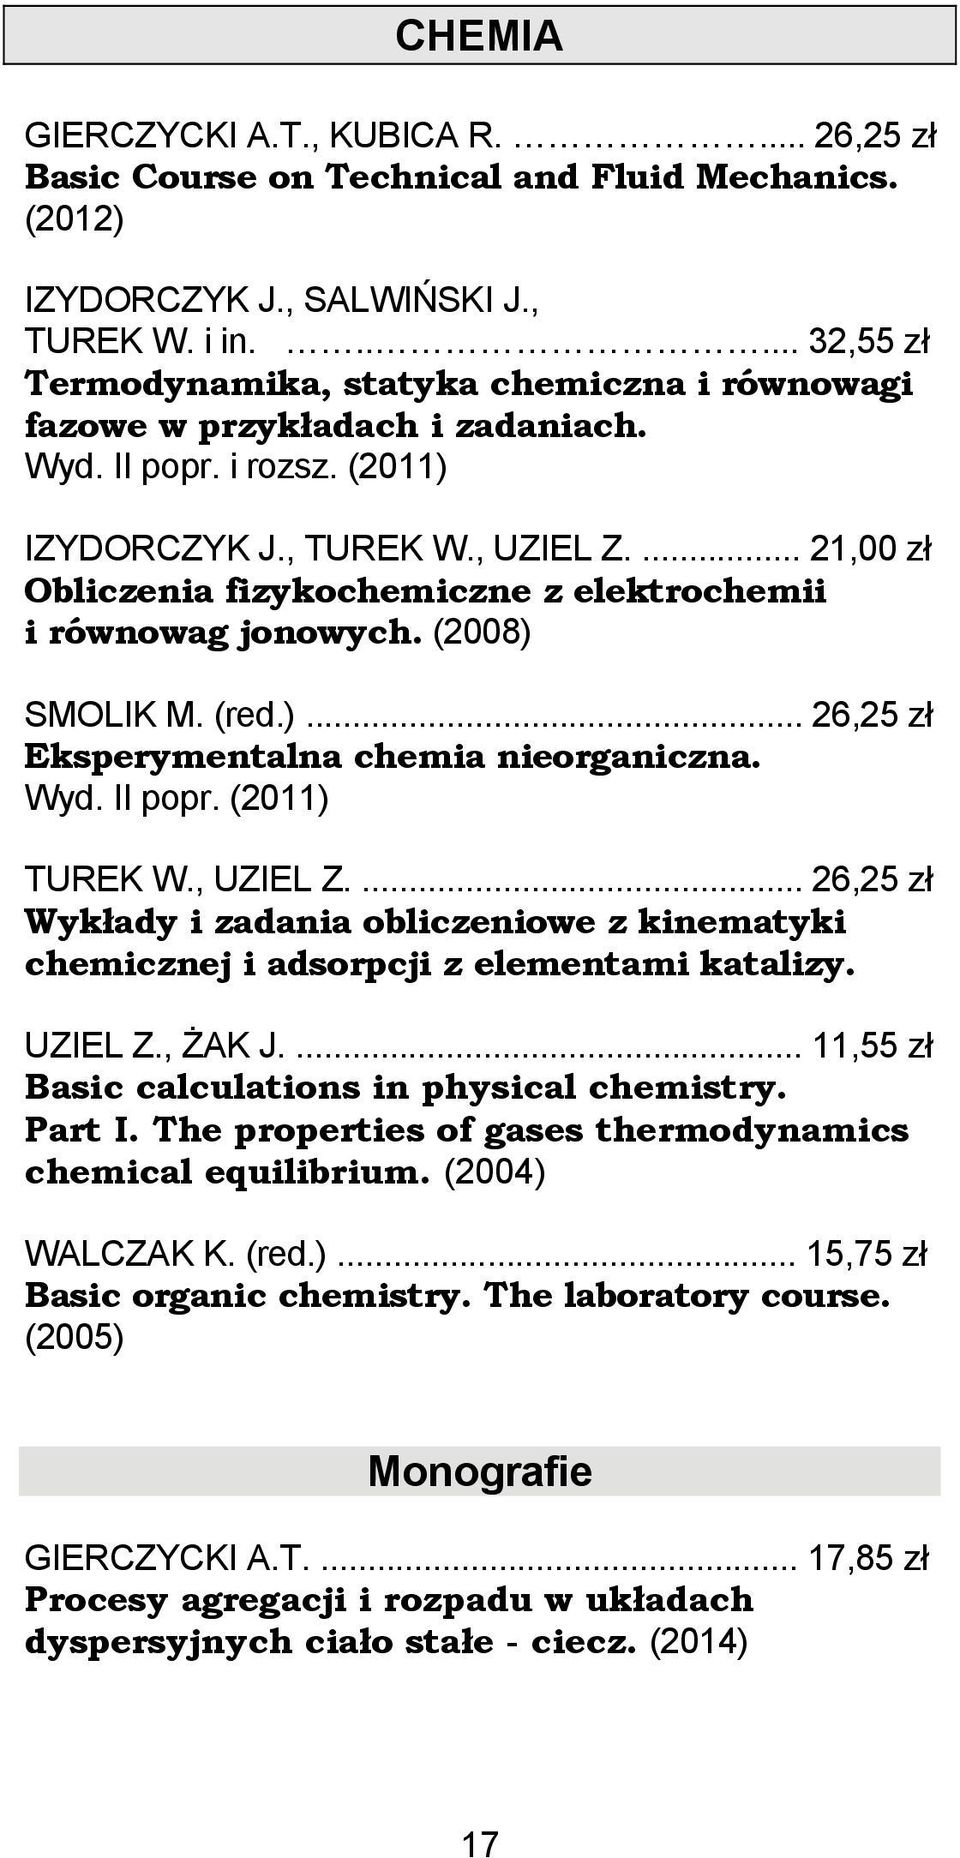 ... 21,00 zł Obliczenia fizykochemiczne z elektrochemii i równowag jonowych. (2008) SMOLIK M. (red.)... 26,25 zł Eksperymentalna chemia nieorganiczna. Wyd. II popr. (2011) TUREK W., UZIEL Z.